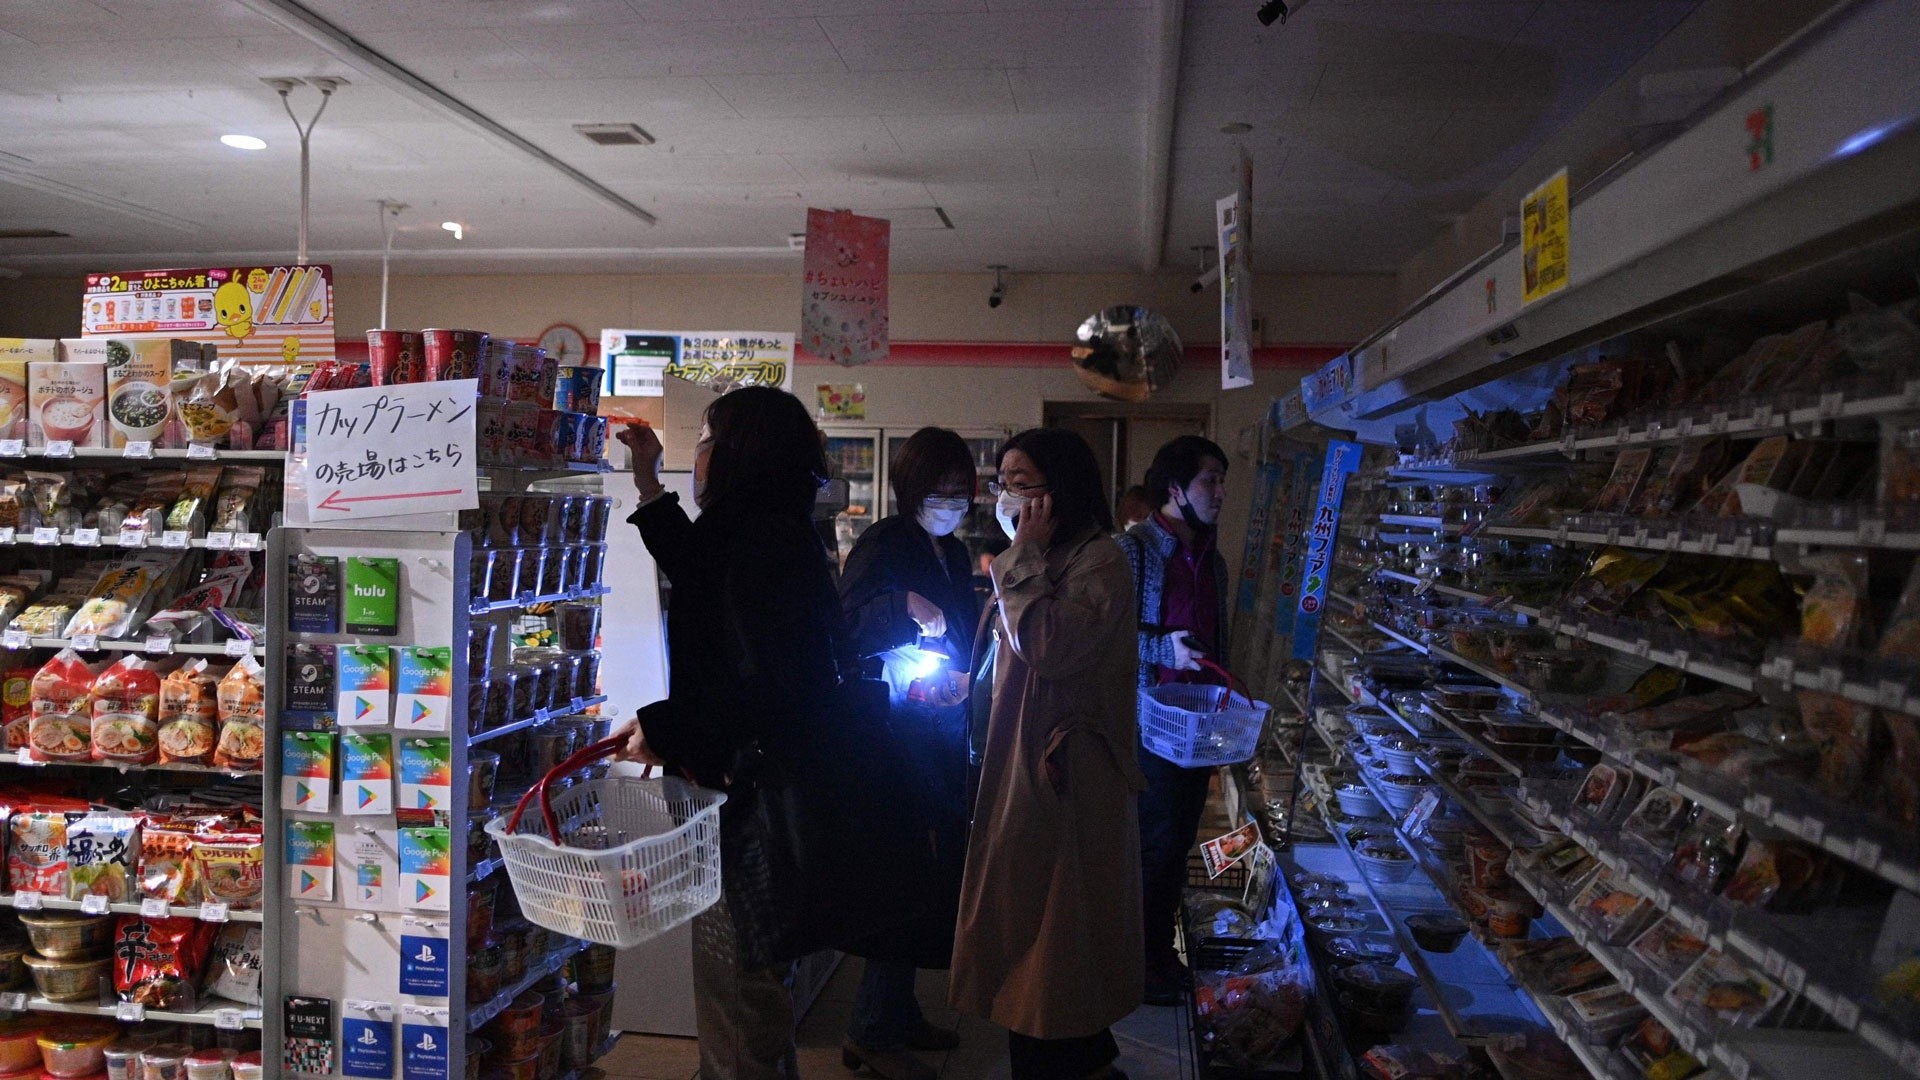 7.4-magnitude earthquake hits off Fukushima, Japan, killing 2, injuring 94